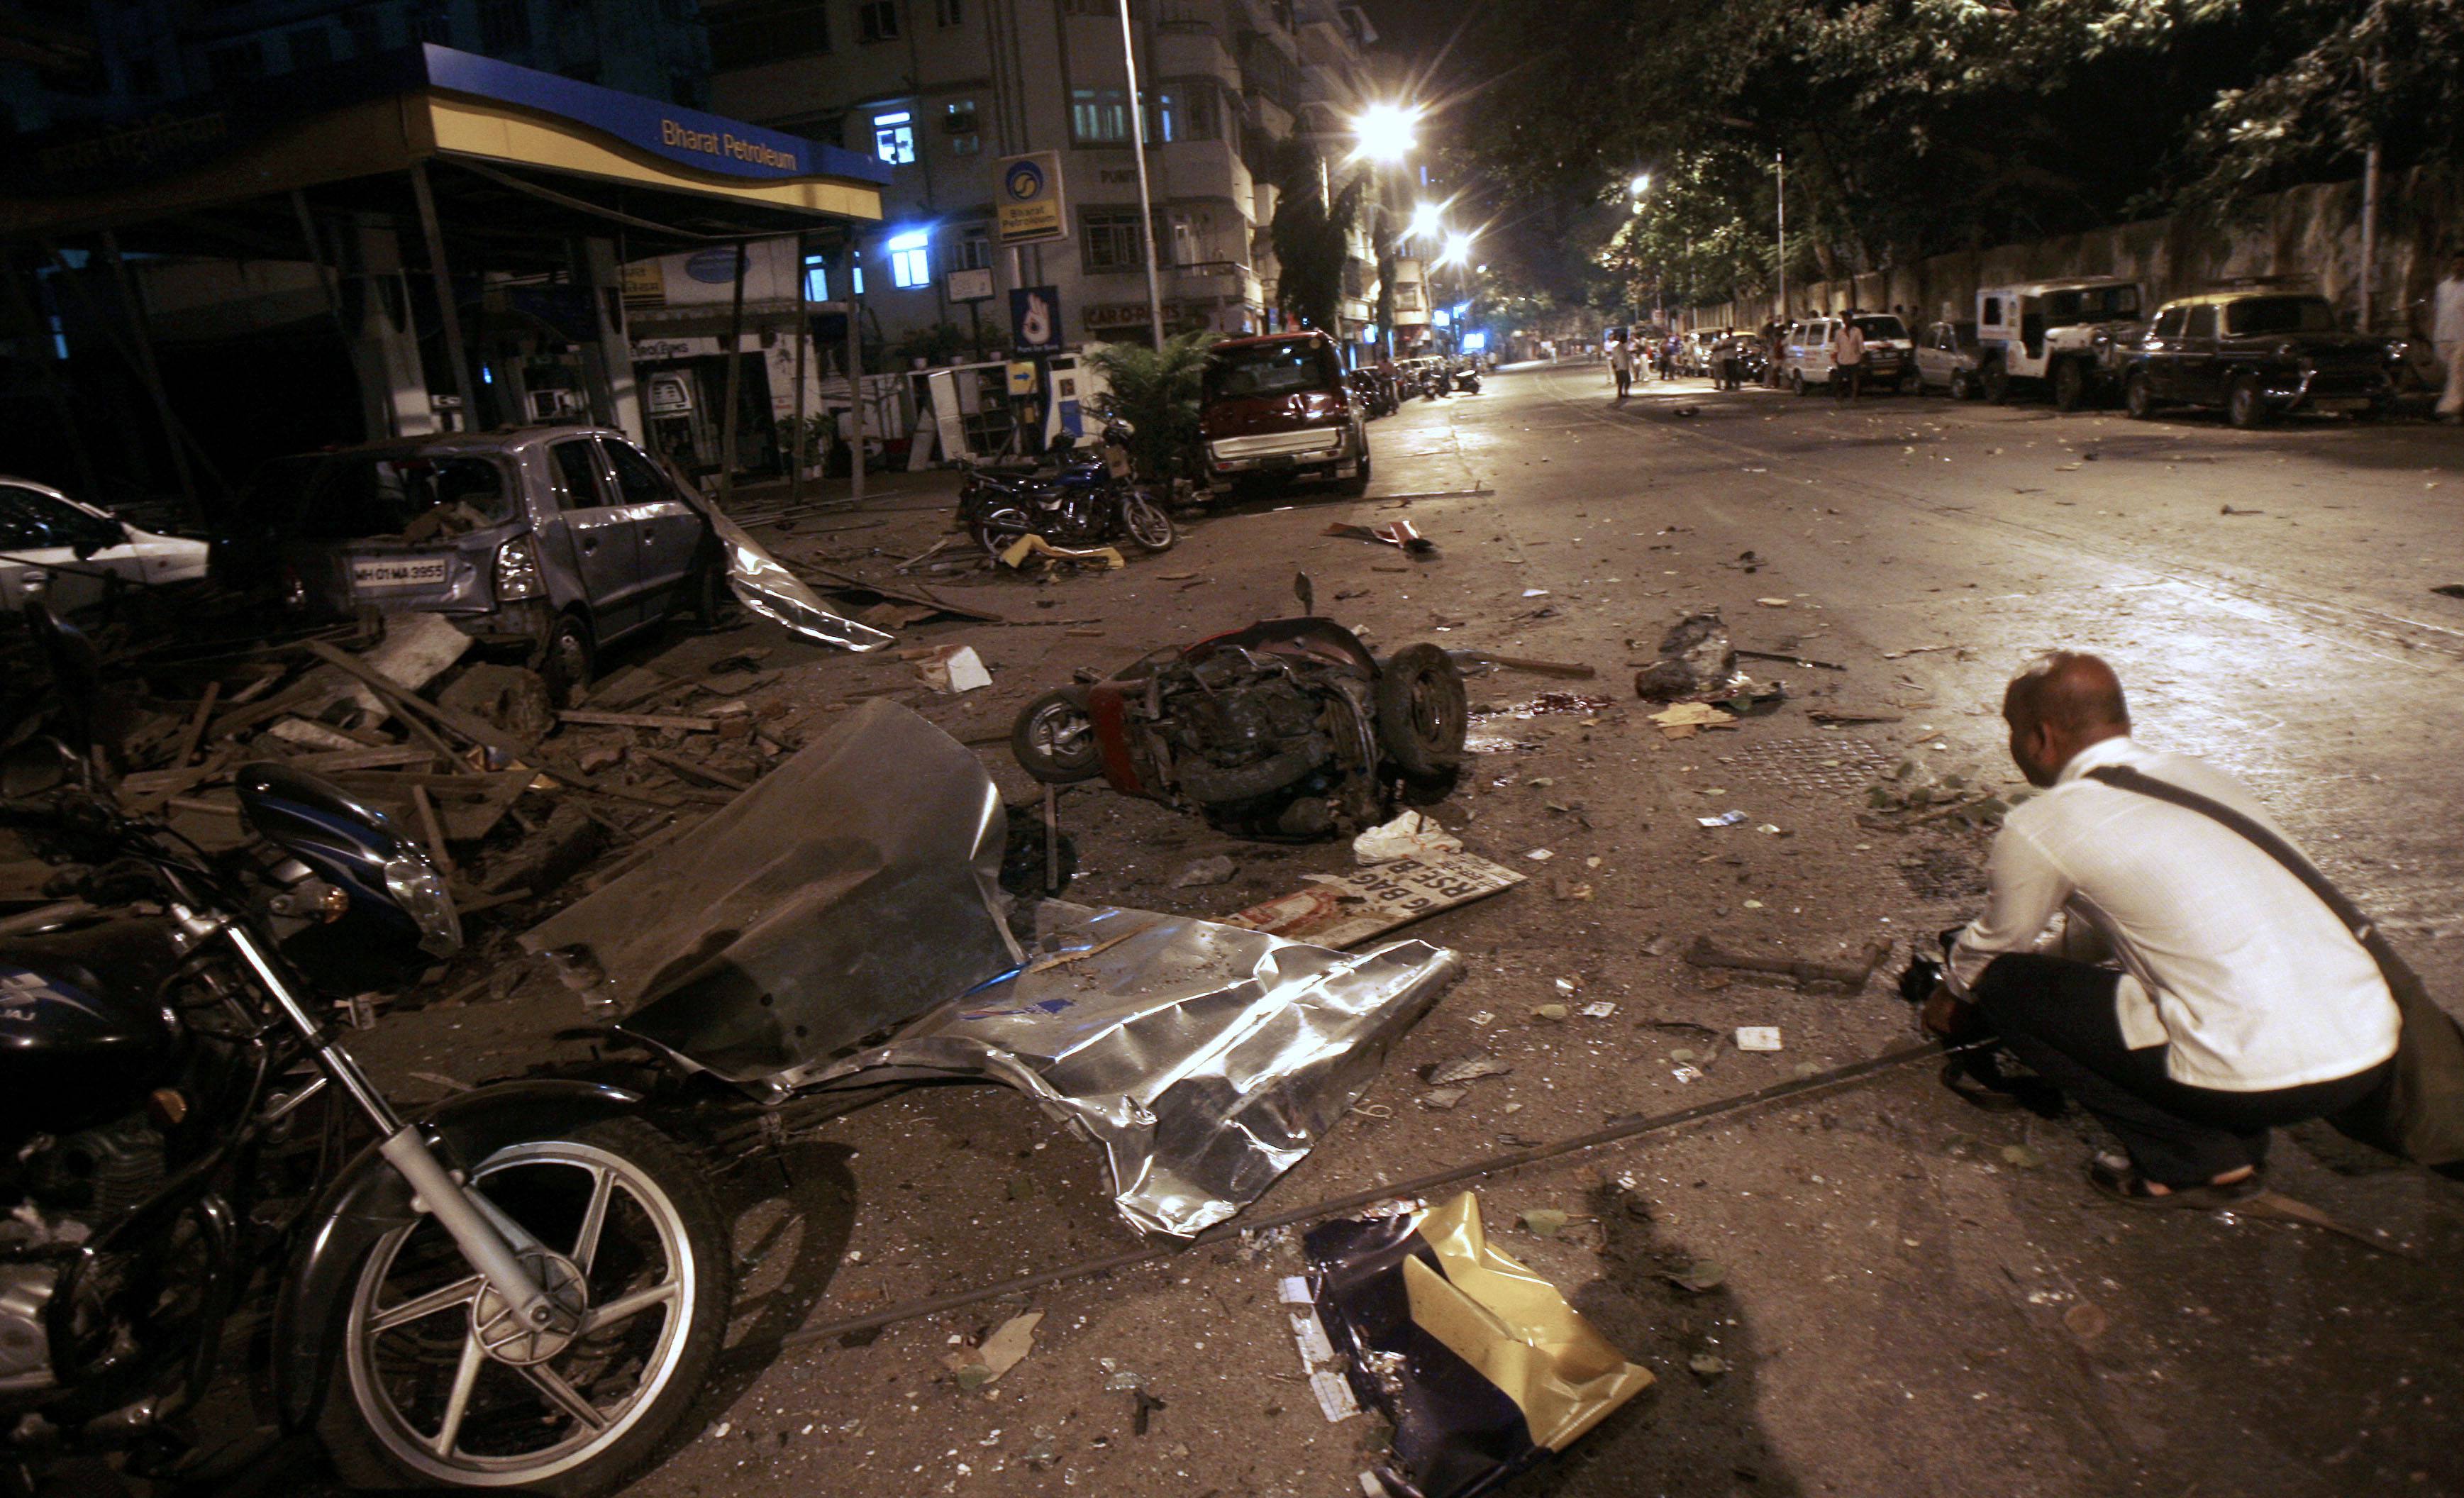 繁华闹市成人间地狱 孟买特大恐怖袭击致数百